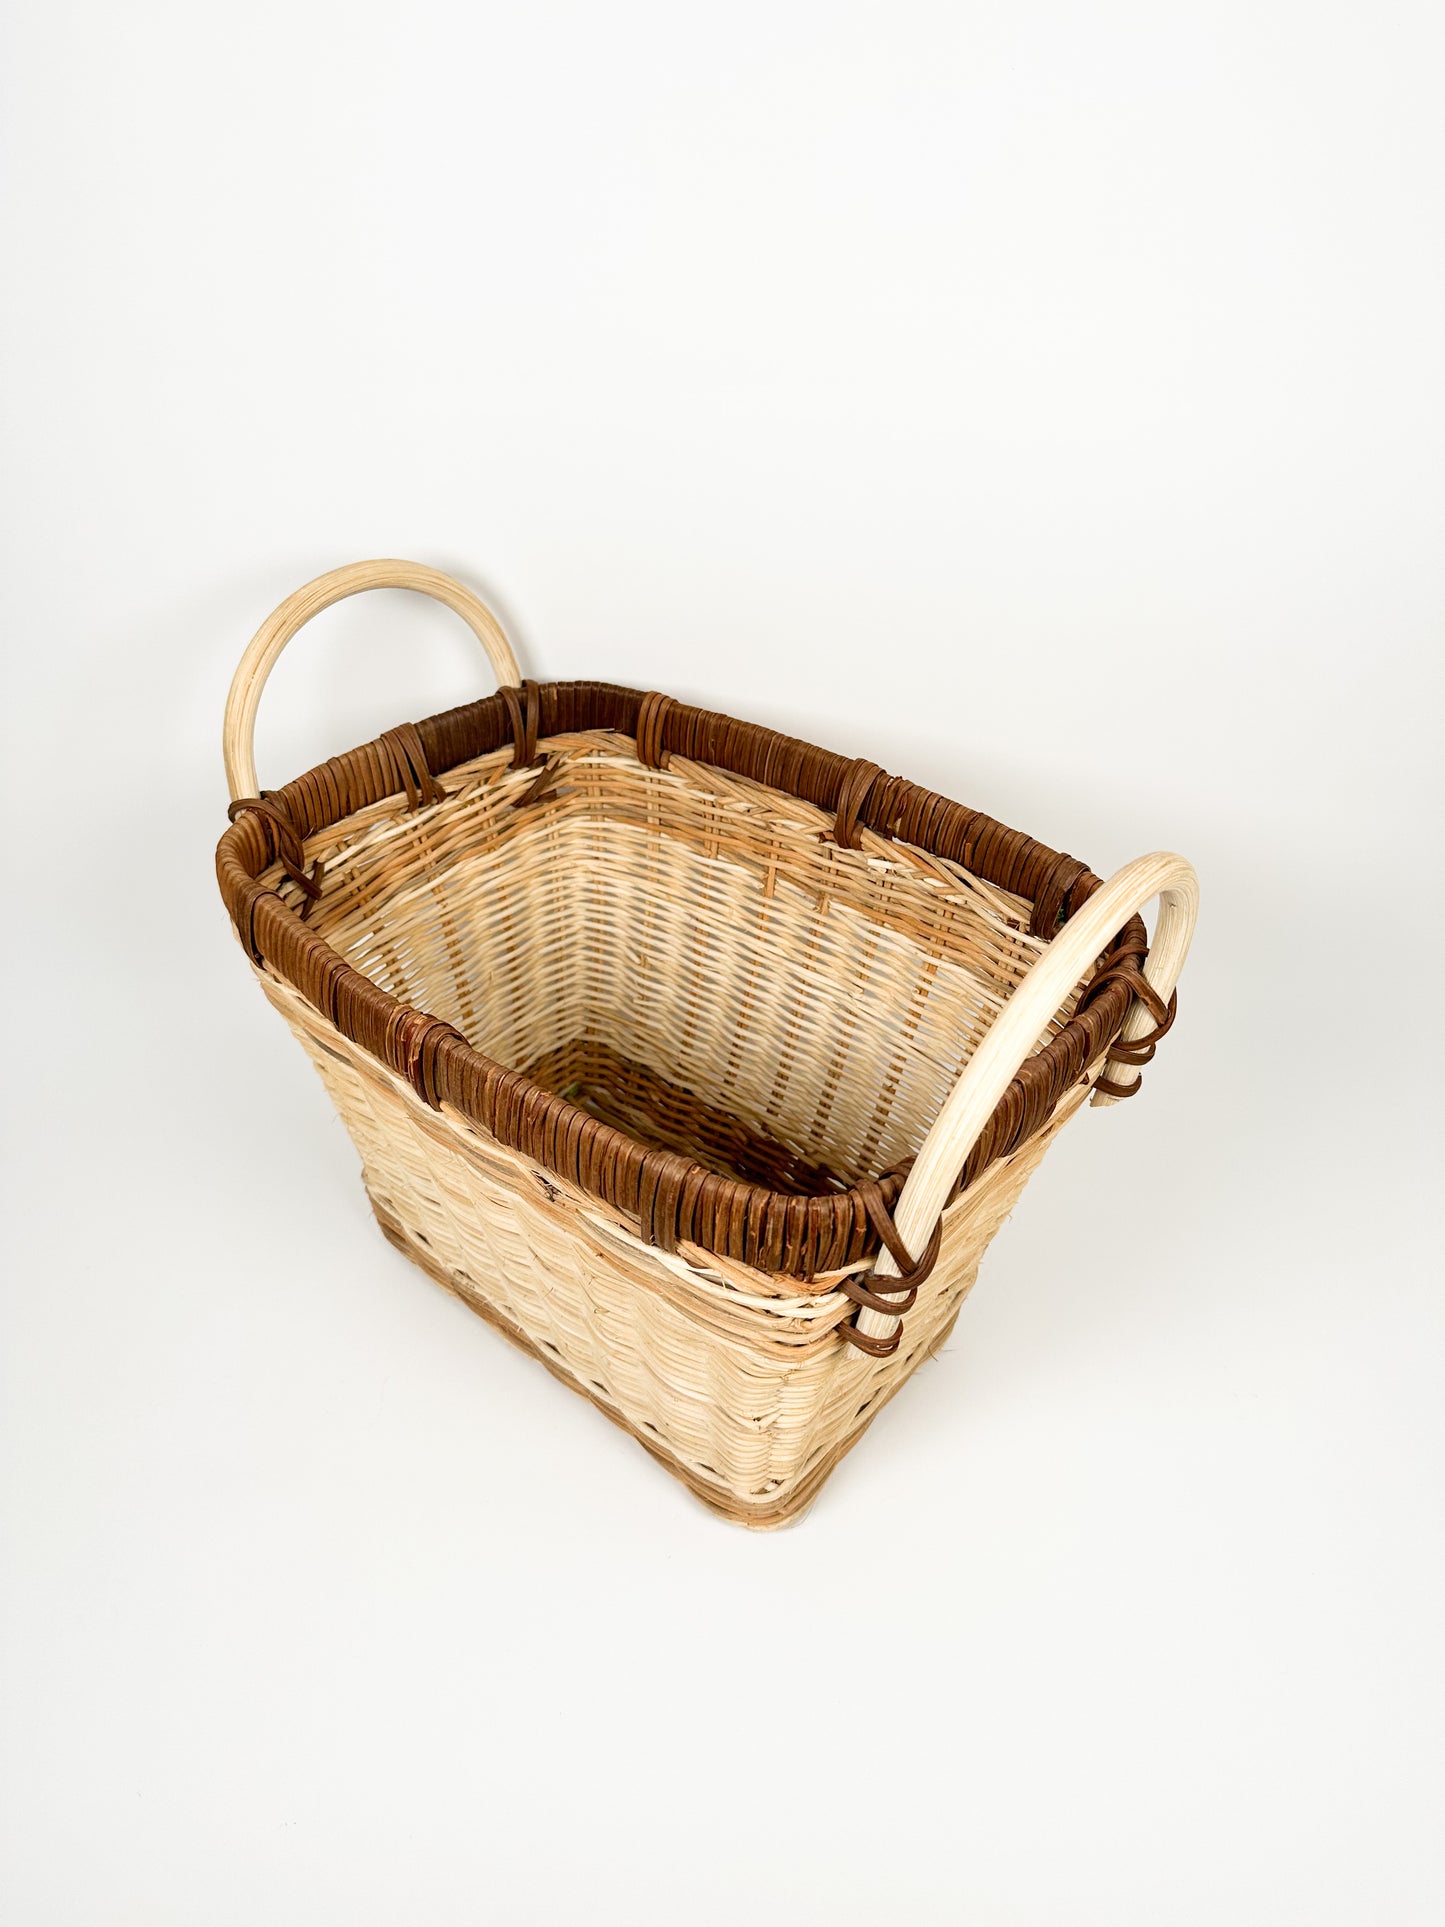 Brown & Cream Wicker Basket